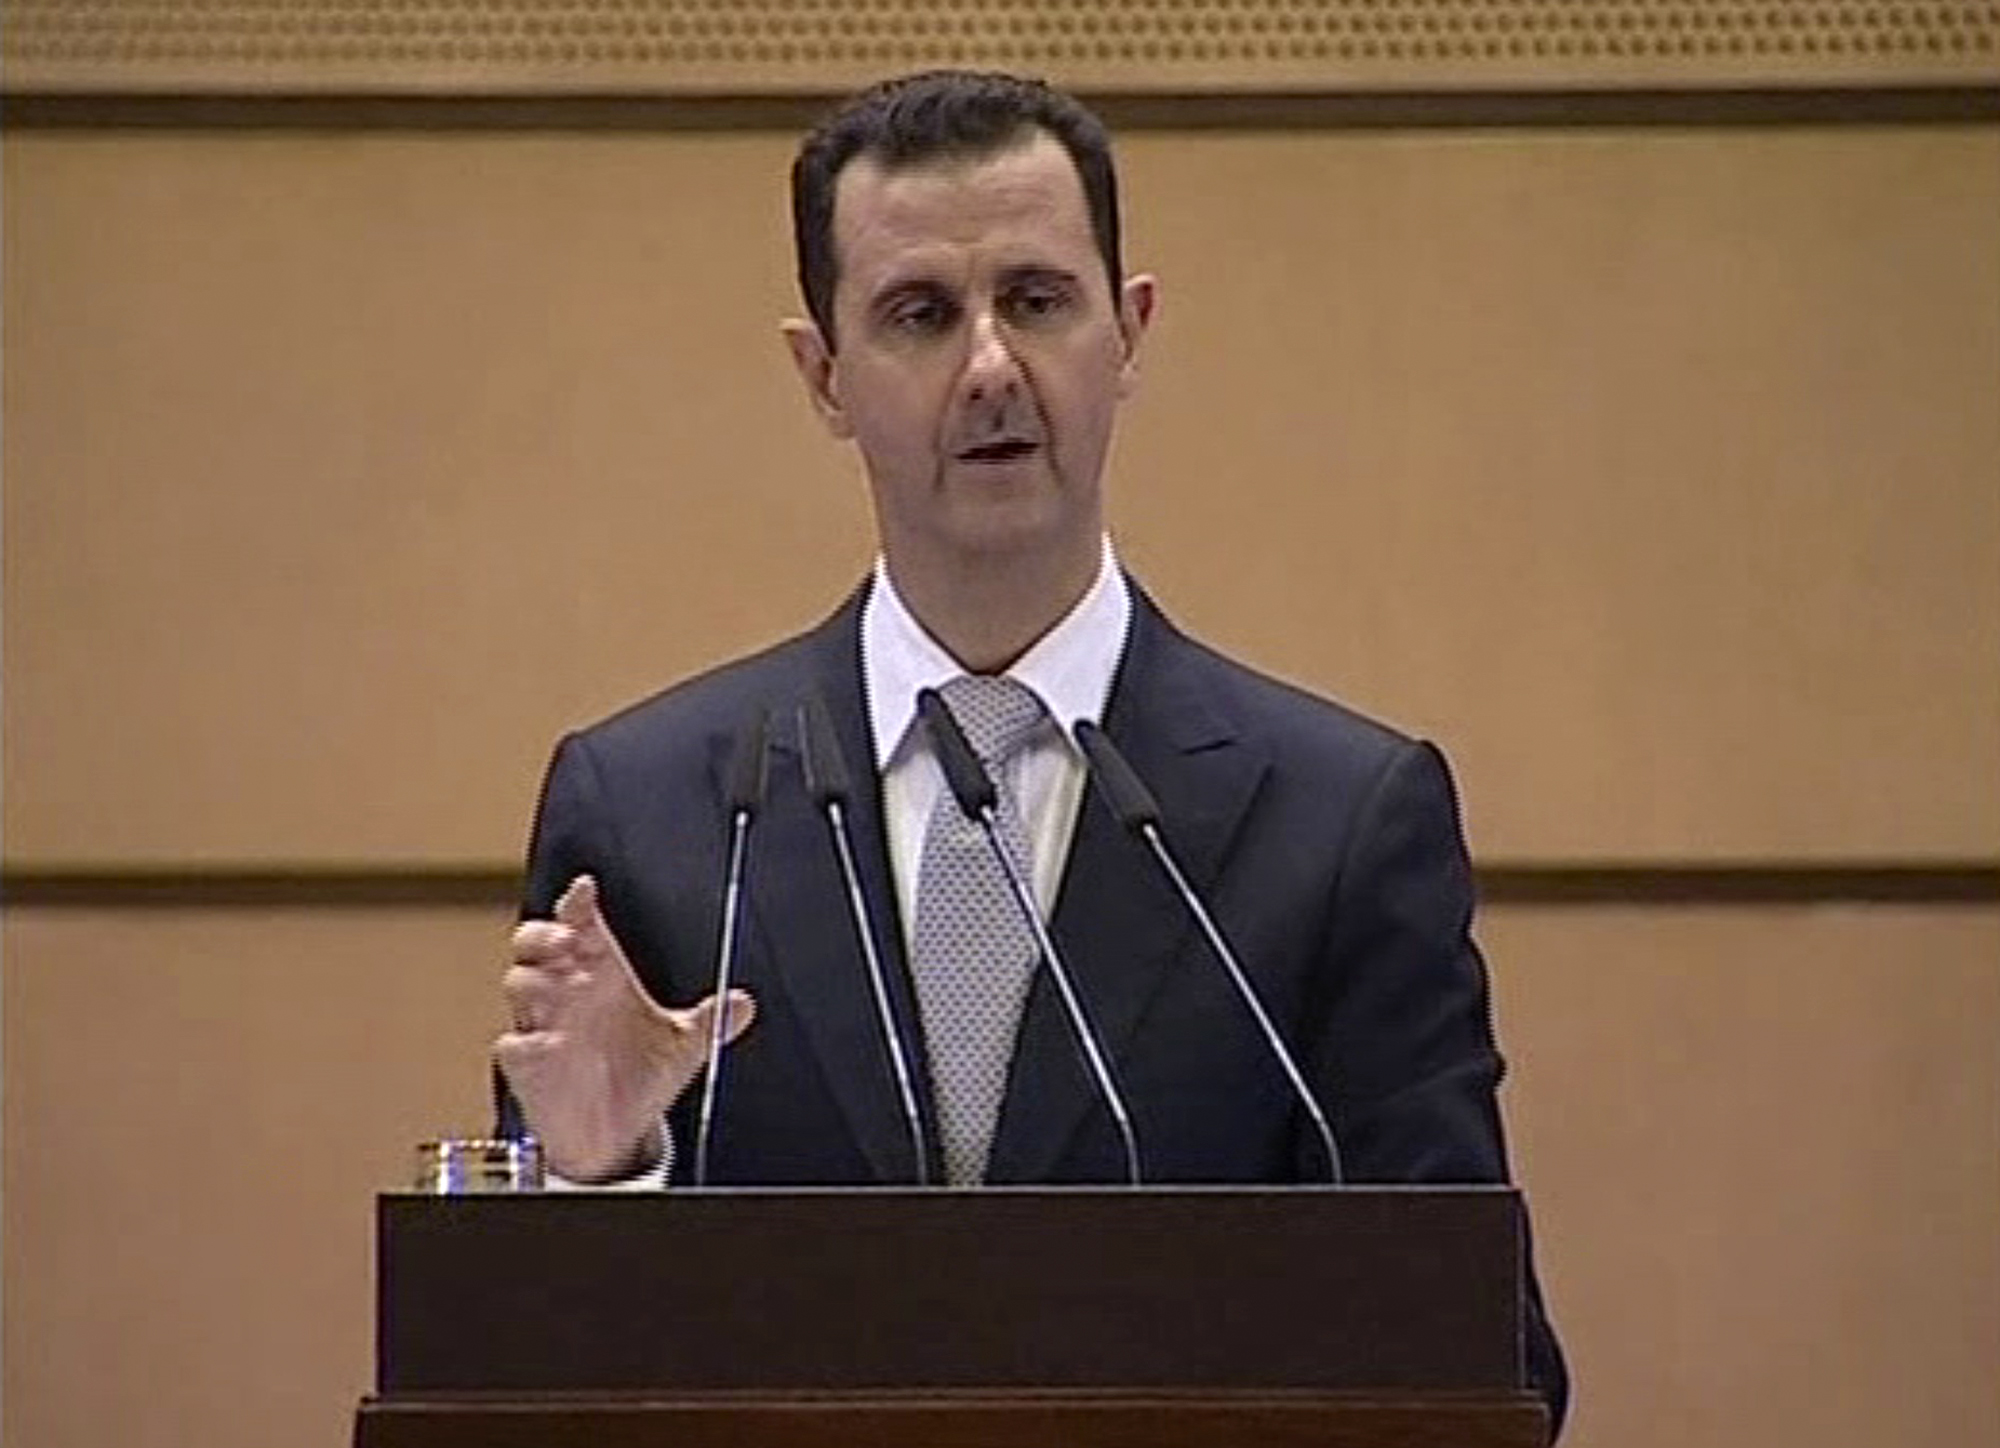 Västvärlden har lågt förtroende för president Bashar Assad.